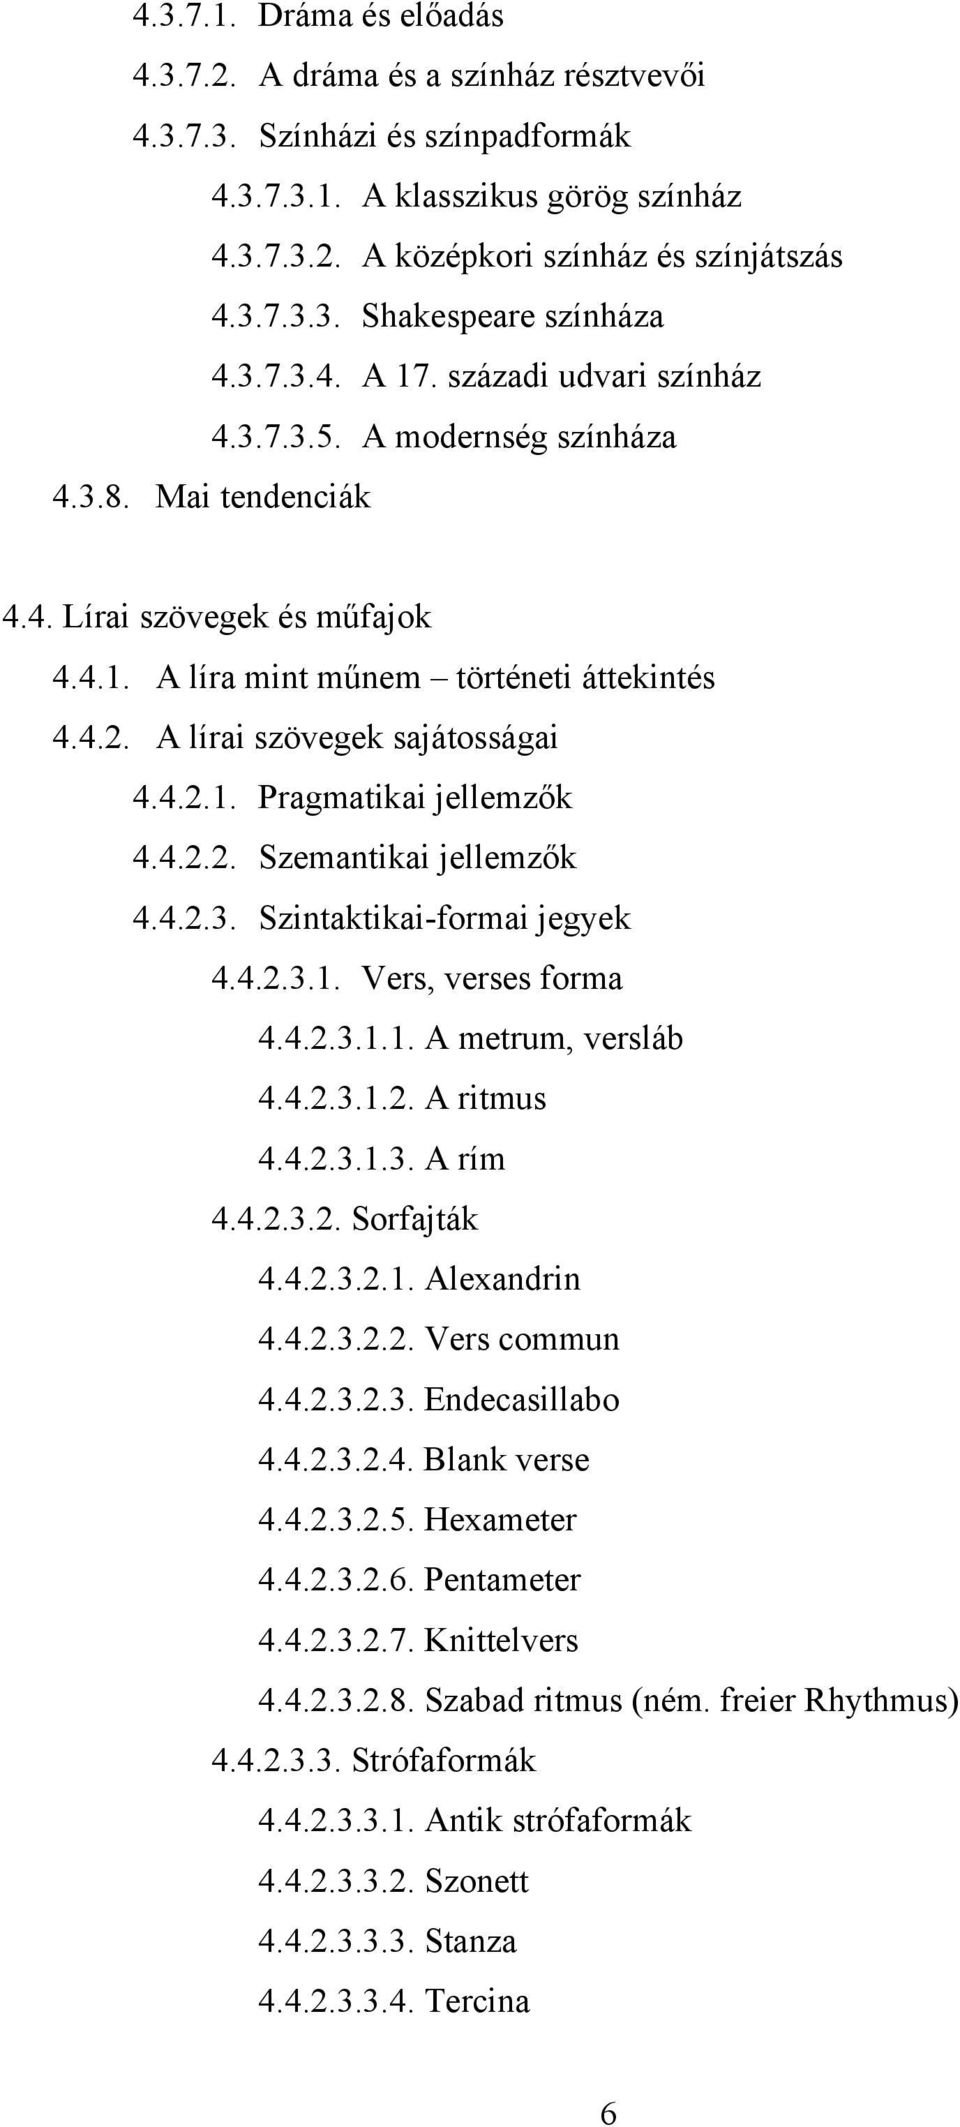 A lírai szövegek sajátosságai 4.4.2.1. Pragmatikai jellemzők 4.4.2.2. Szemantikai jellemzők 4.4.2.3. Szintaktikai-formai jegyek 4.4.2.3.1. Vers, verses forma 4.4.2.3.1.1. A metrum, versláb 4.4.2.3.1.2. A ritmus 4.